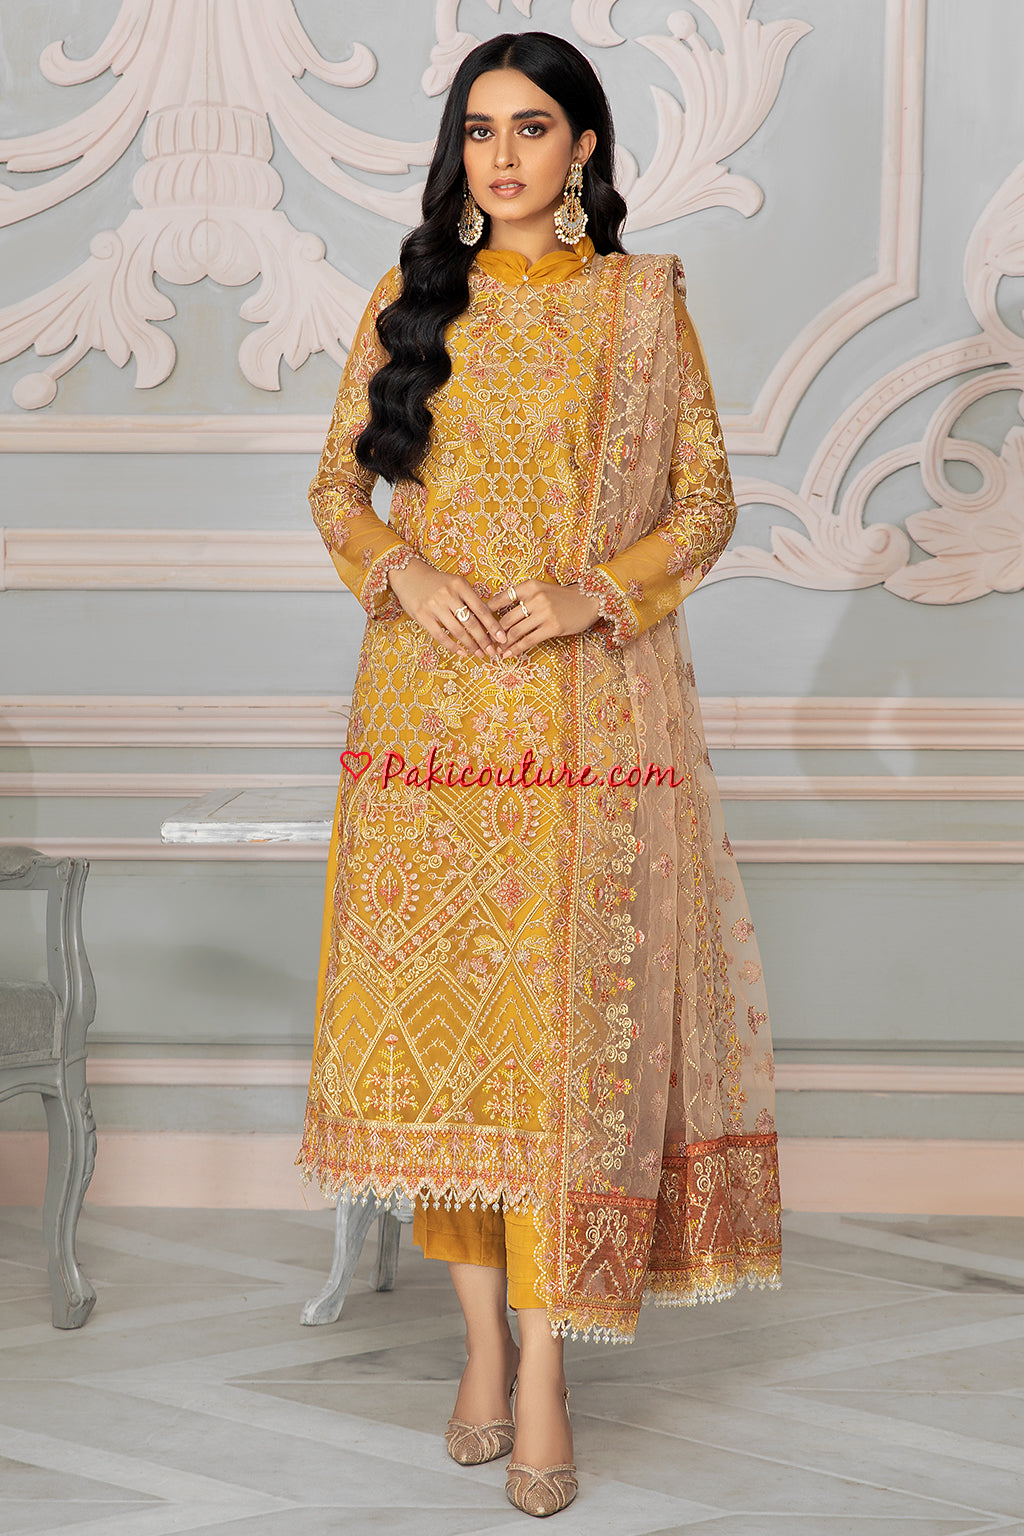 Pin by Muniba afroz on A y e z a K h a n | Pakistani formal dresses, Shadi  dresses, Formal dresses long